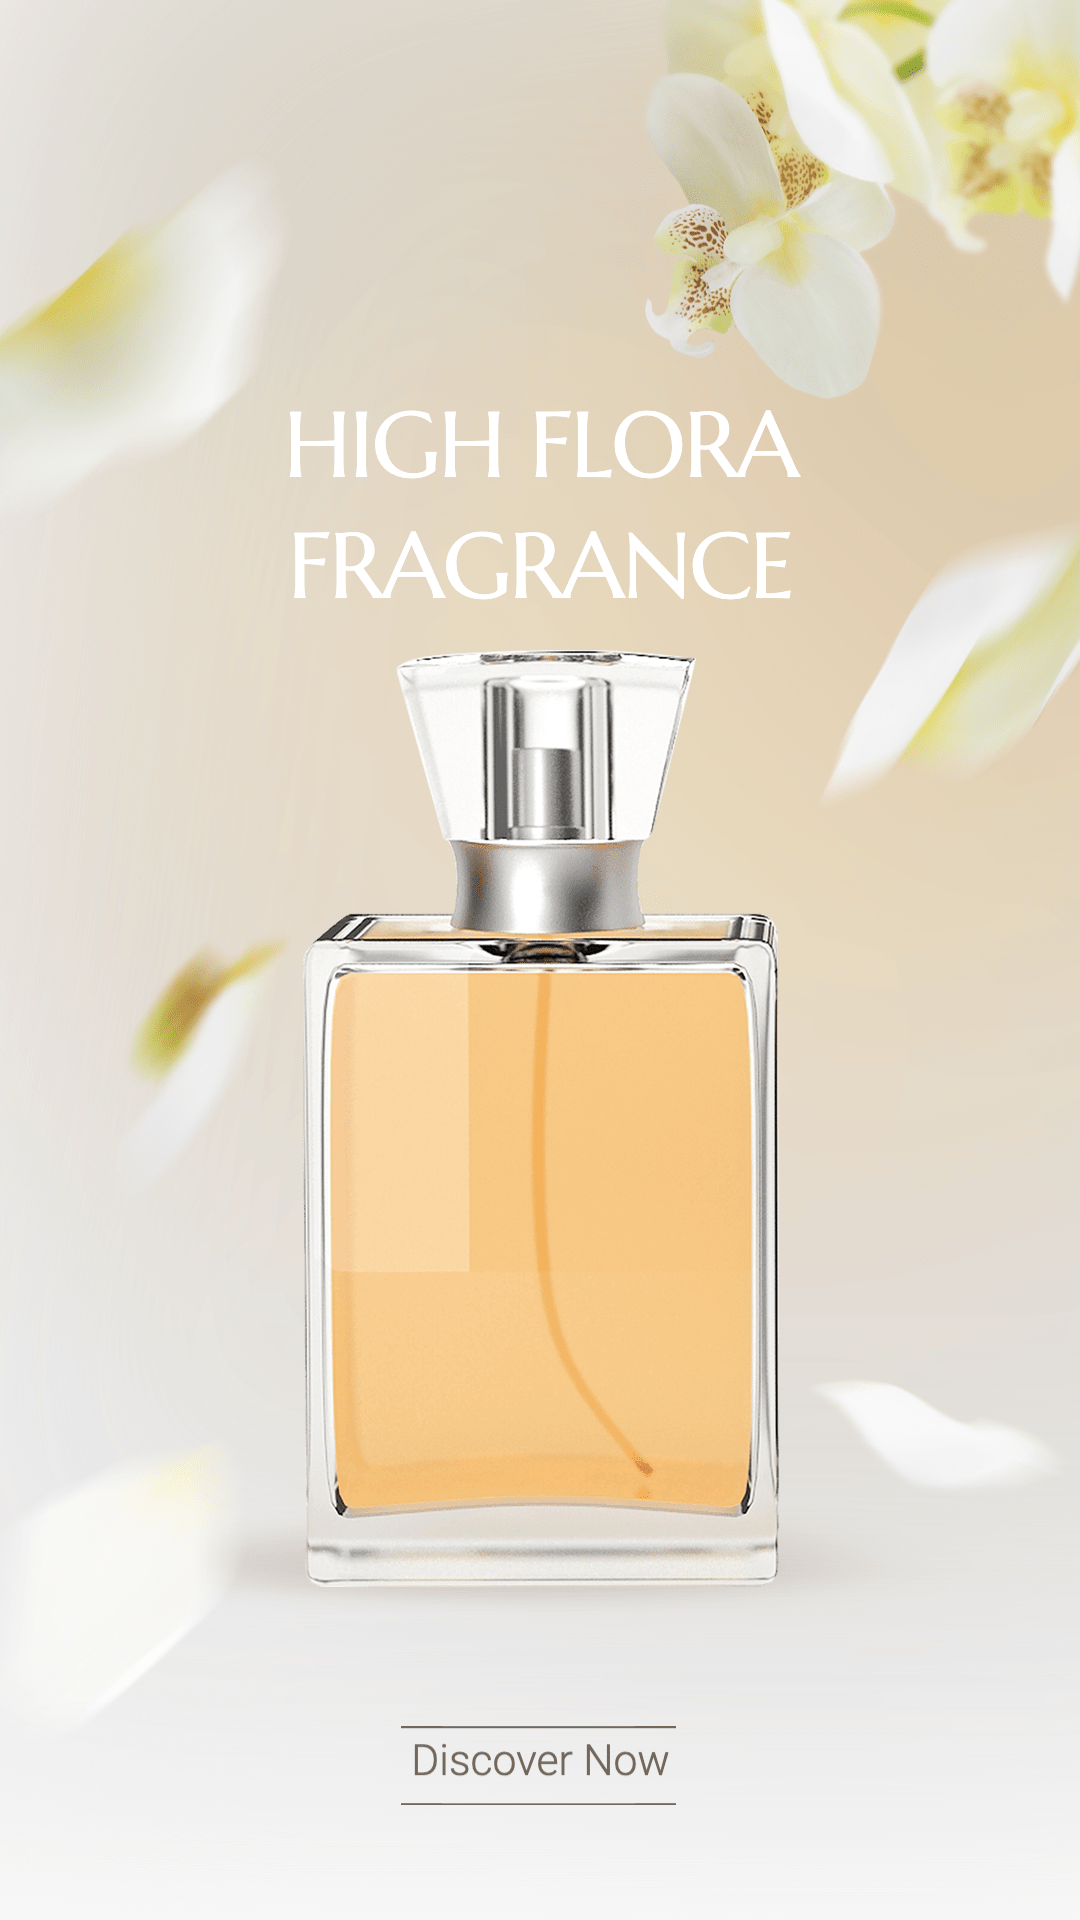 Petal Element Women’s Perfume Fragrance Sale Promotion Ecommerce Story预览效果